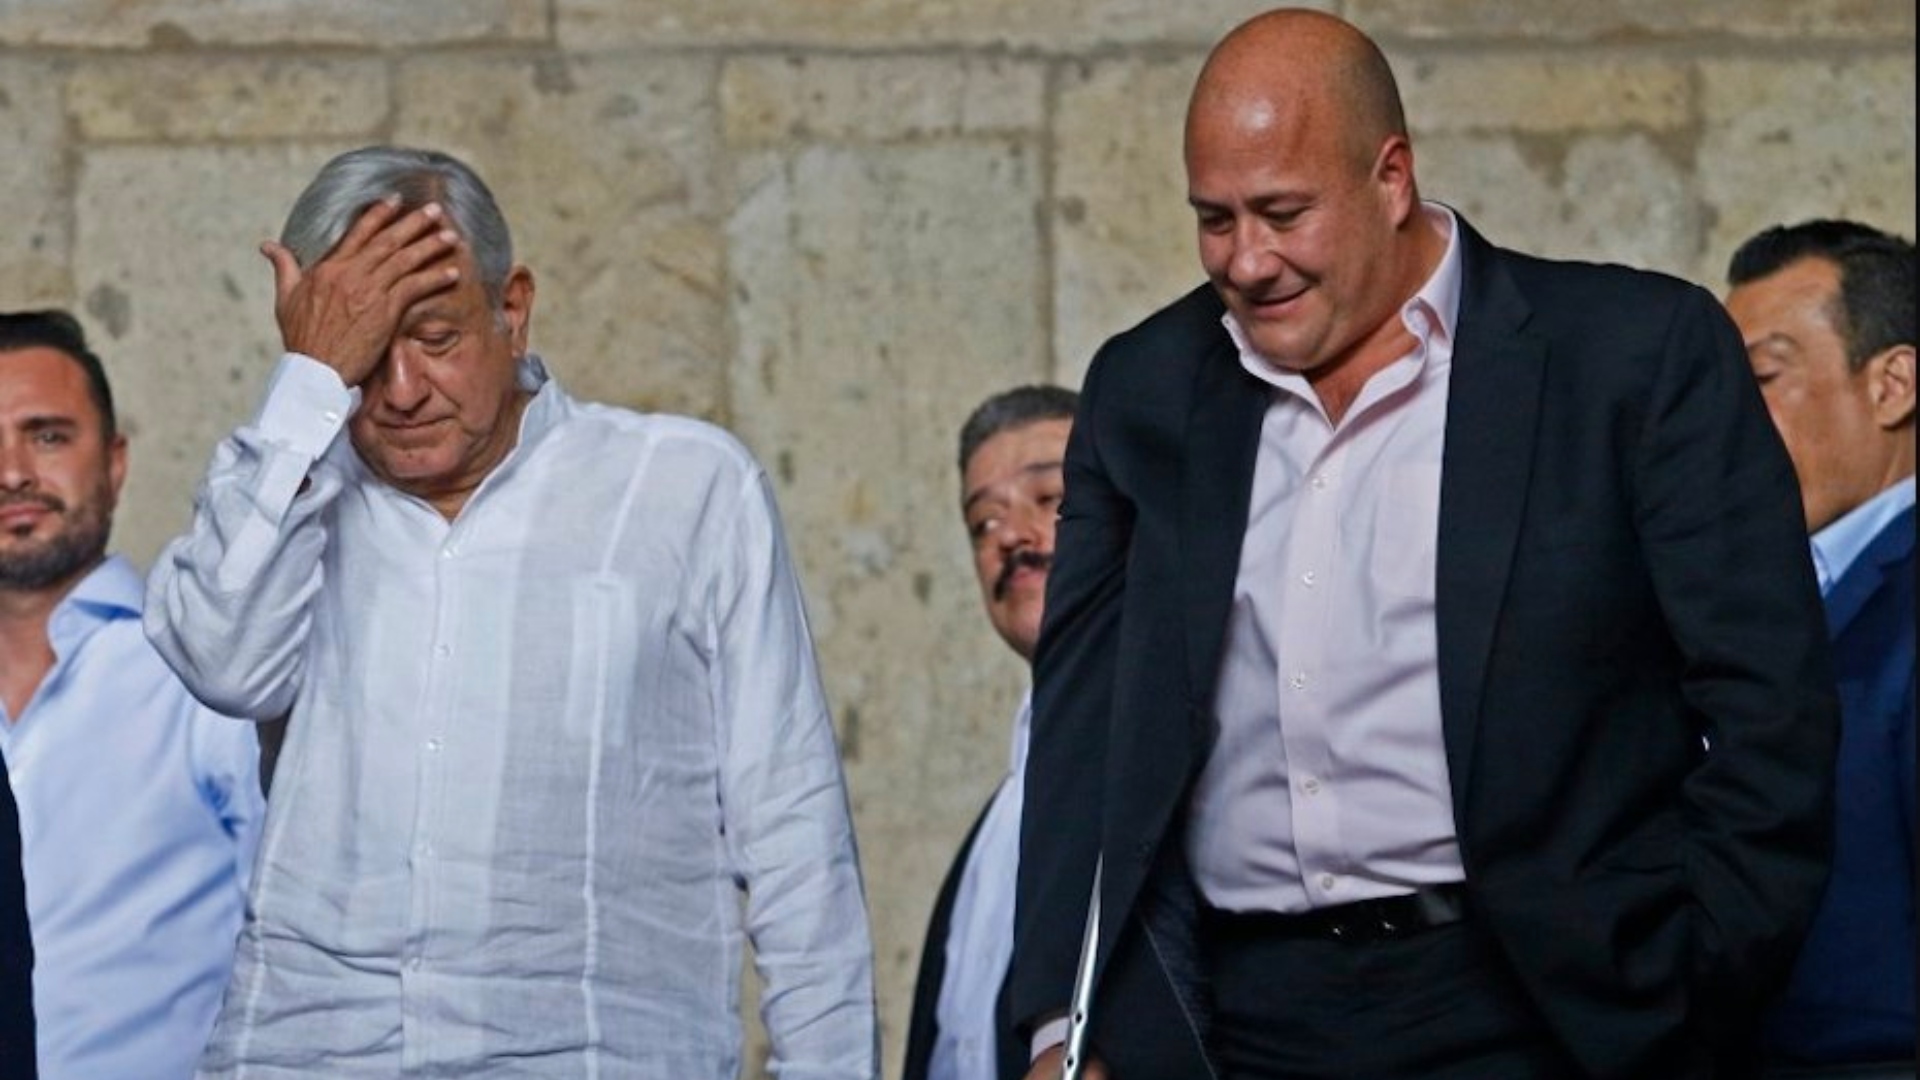 López Obrador, durante la conferencia matutina de este viernes realizada en Tabasco, reconoció tener diferencias políticas e ideológicas con el gobernador de Jalisco, pero aseguró que actúa con responsabilidad (Foto: Cuartoscuro)
